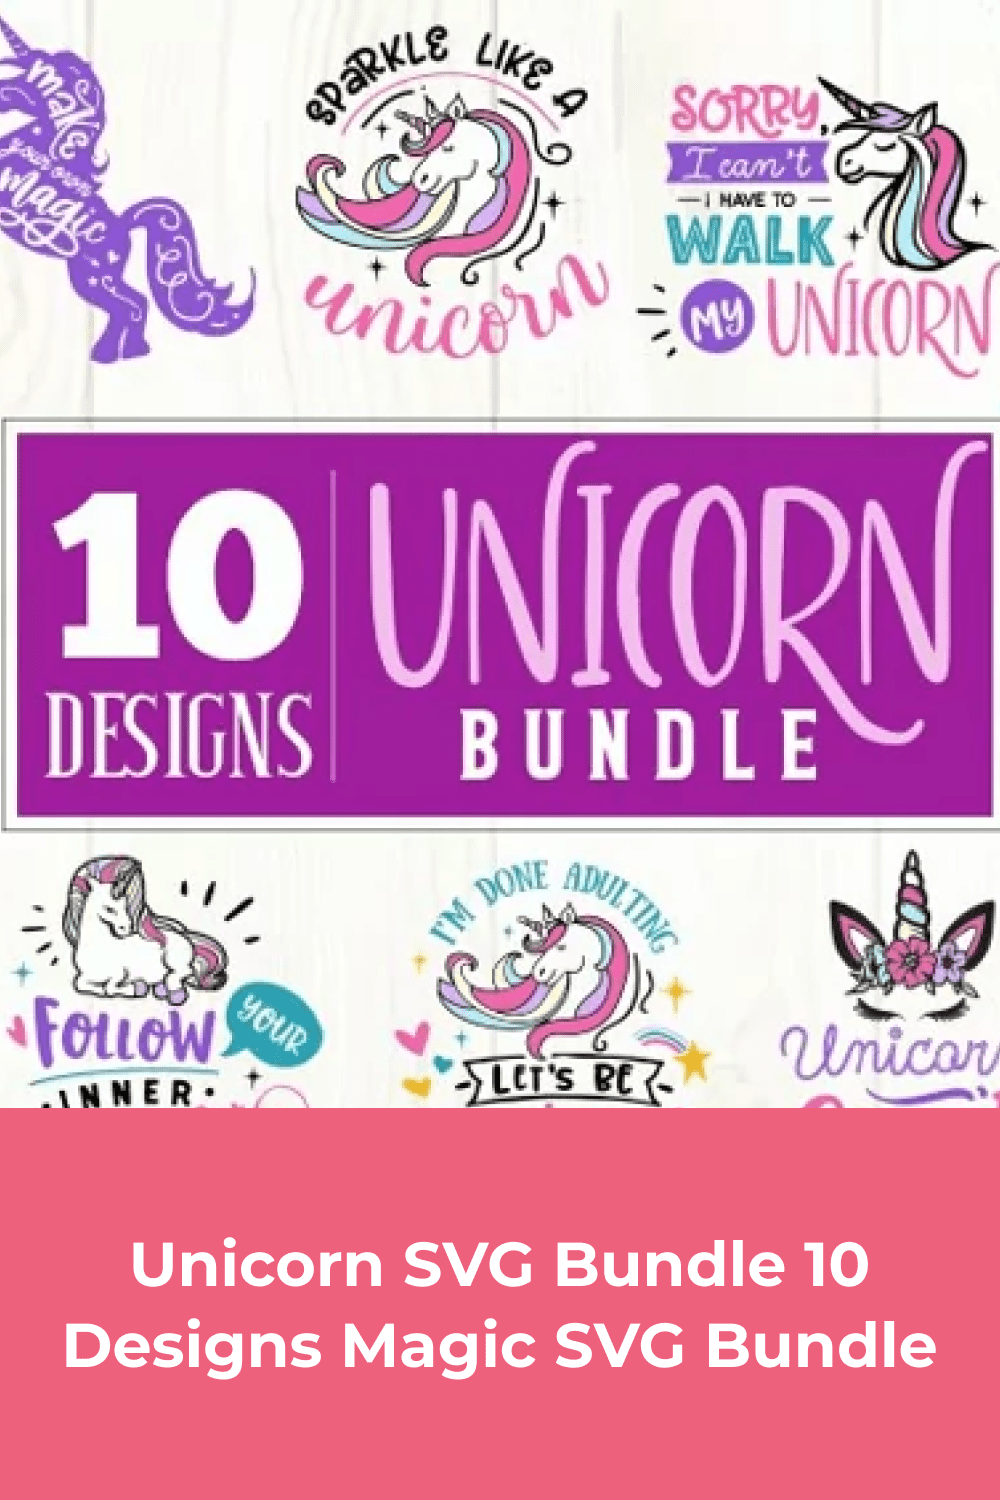 Unicorn SVG Bundle 10 Designs Magic SVG Bundle.